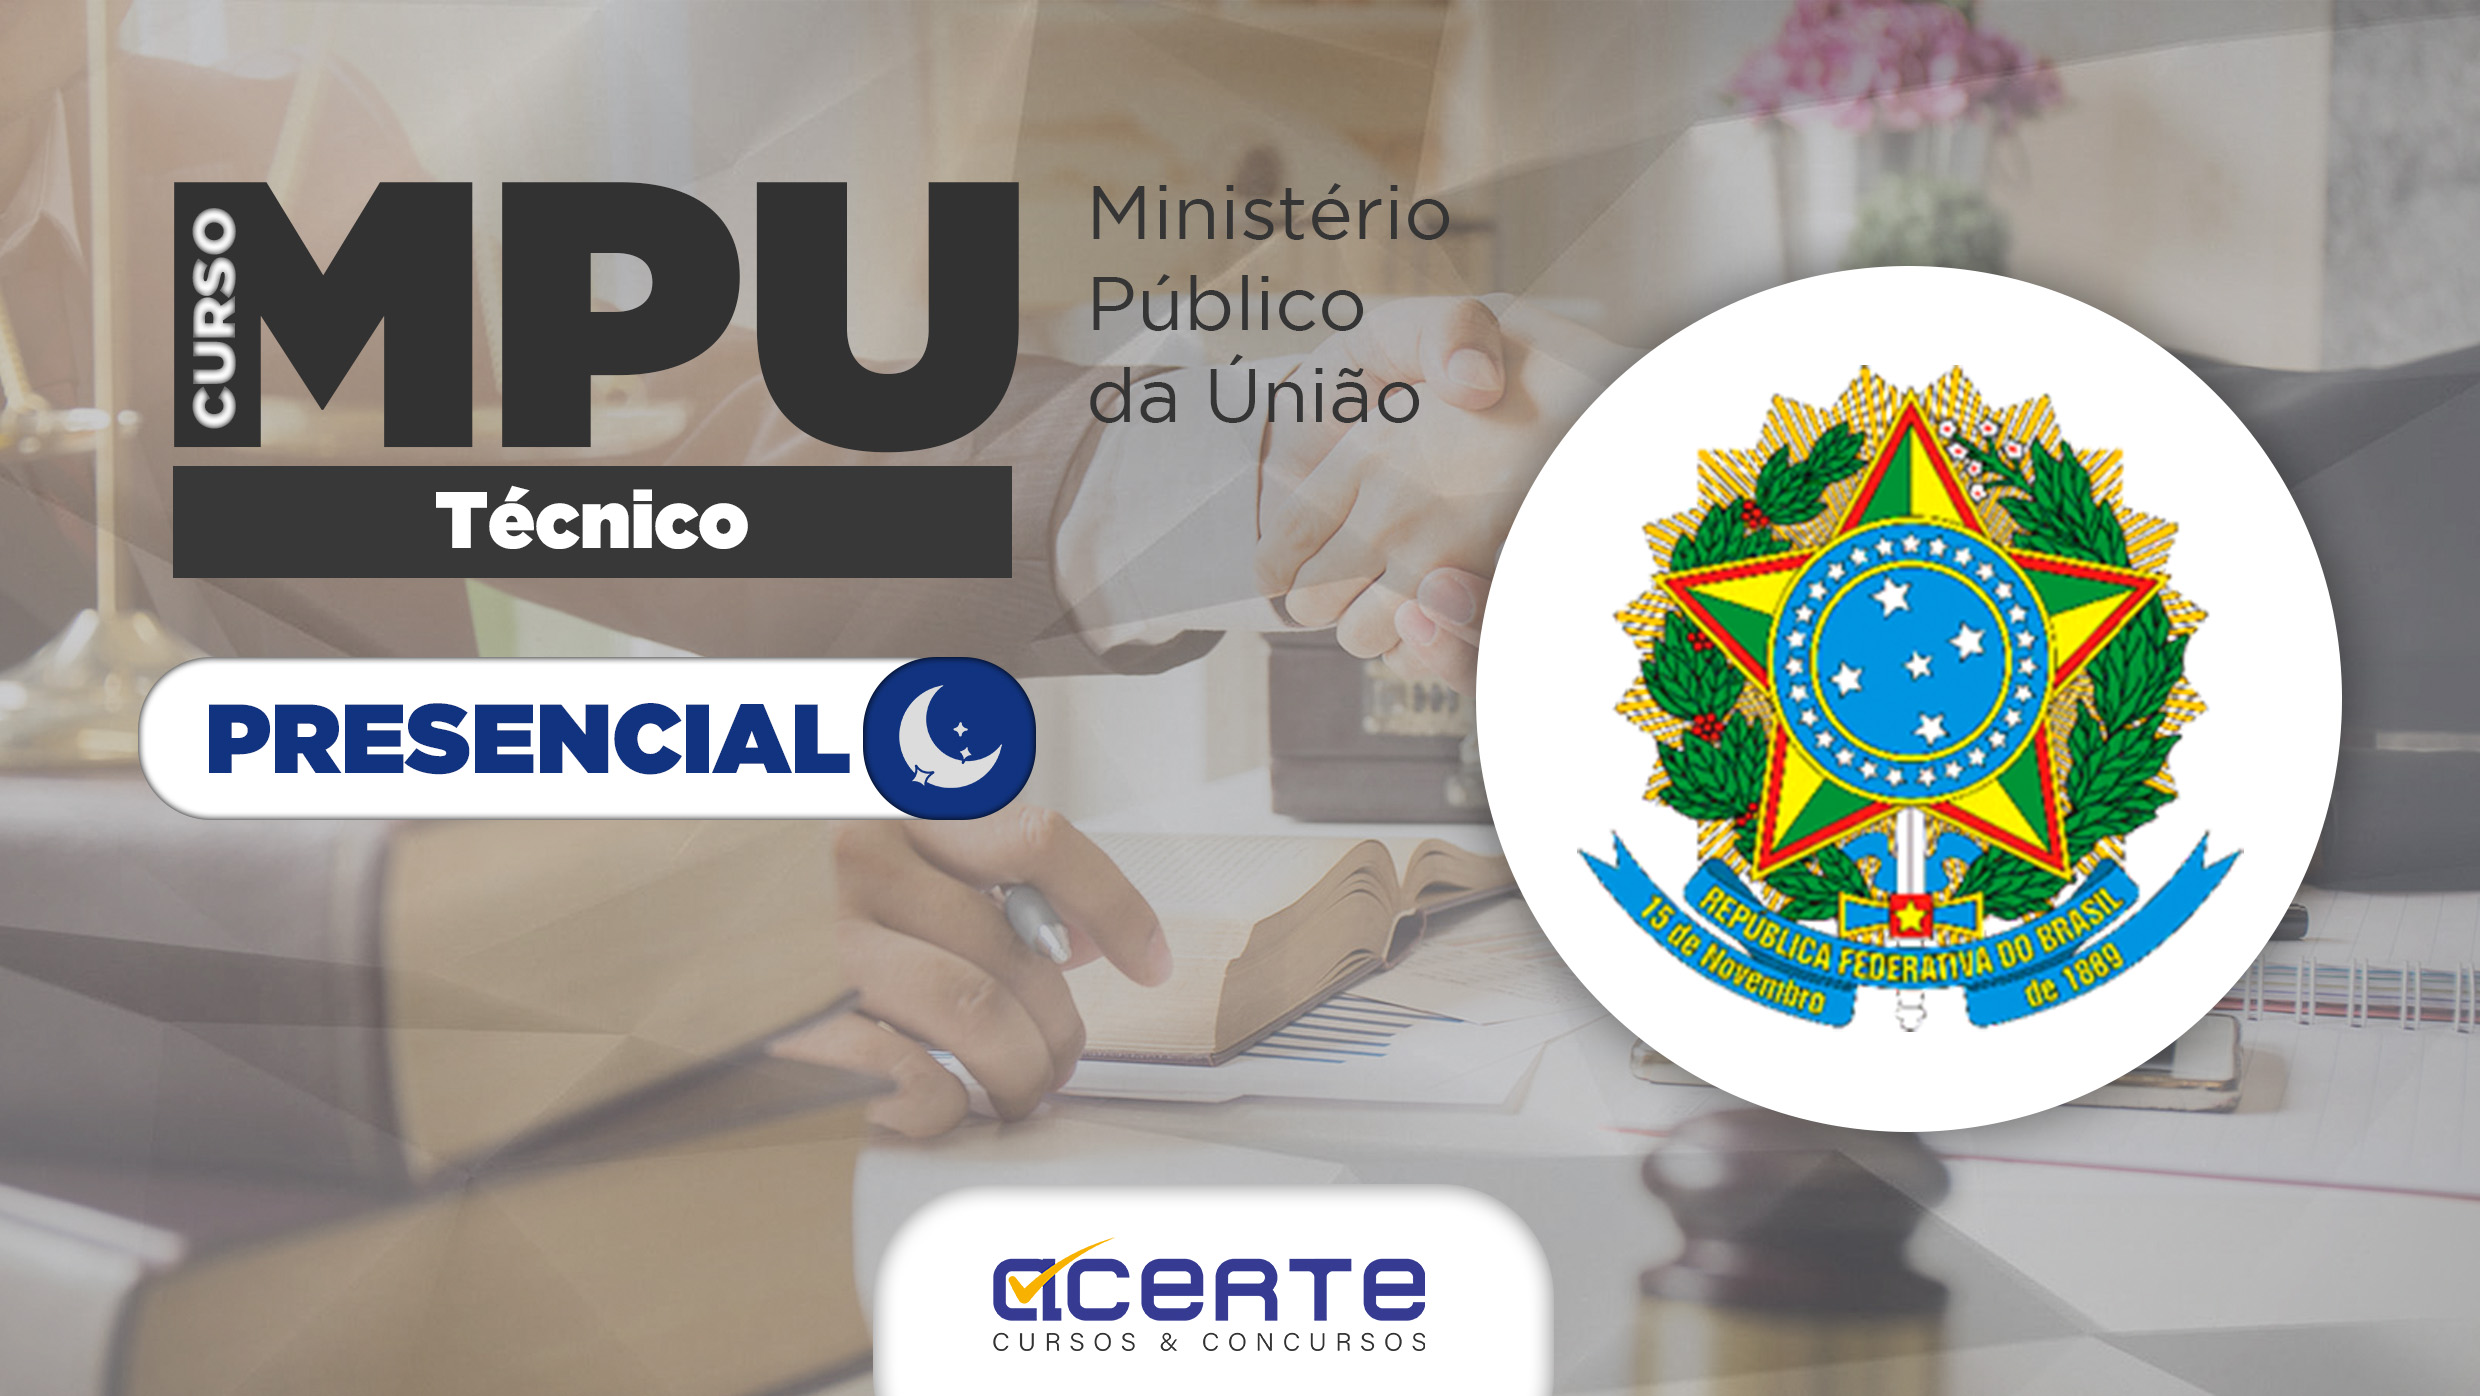 MPU - Ministério Público da União - Técnico - Presencial